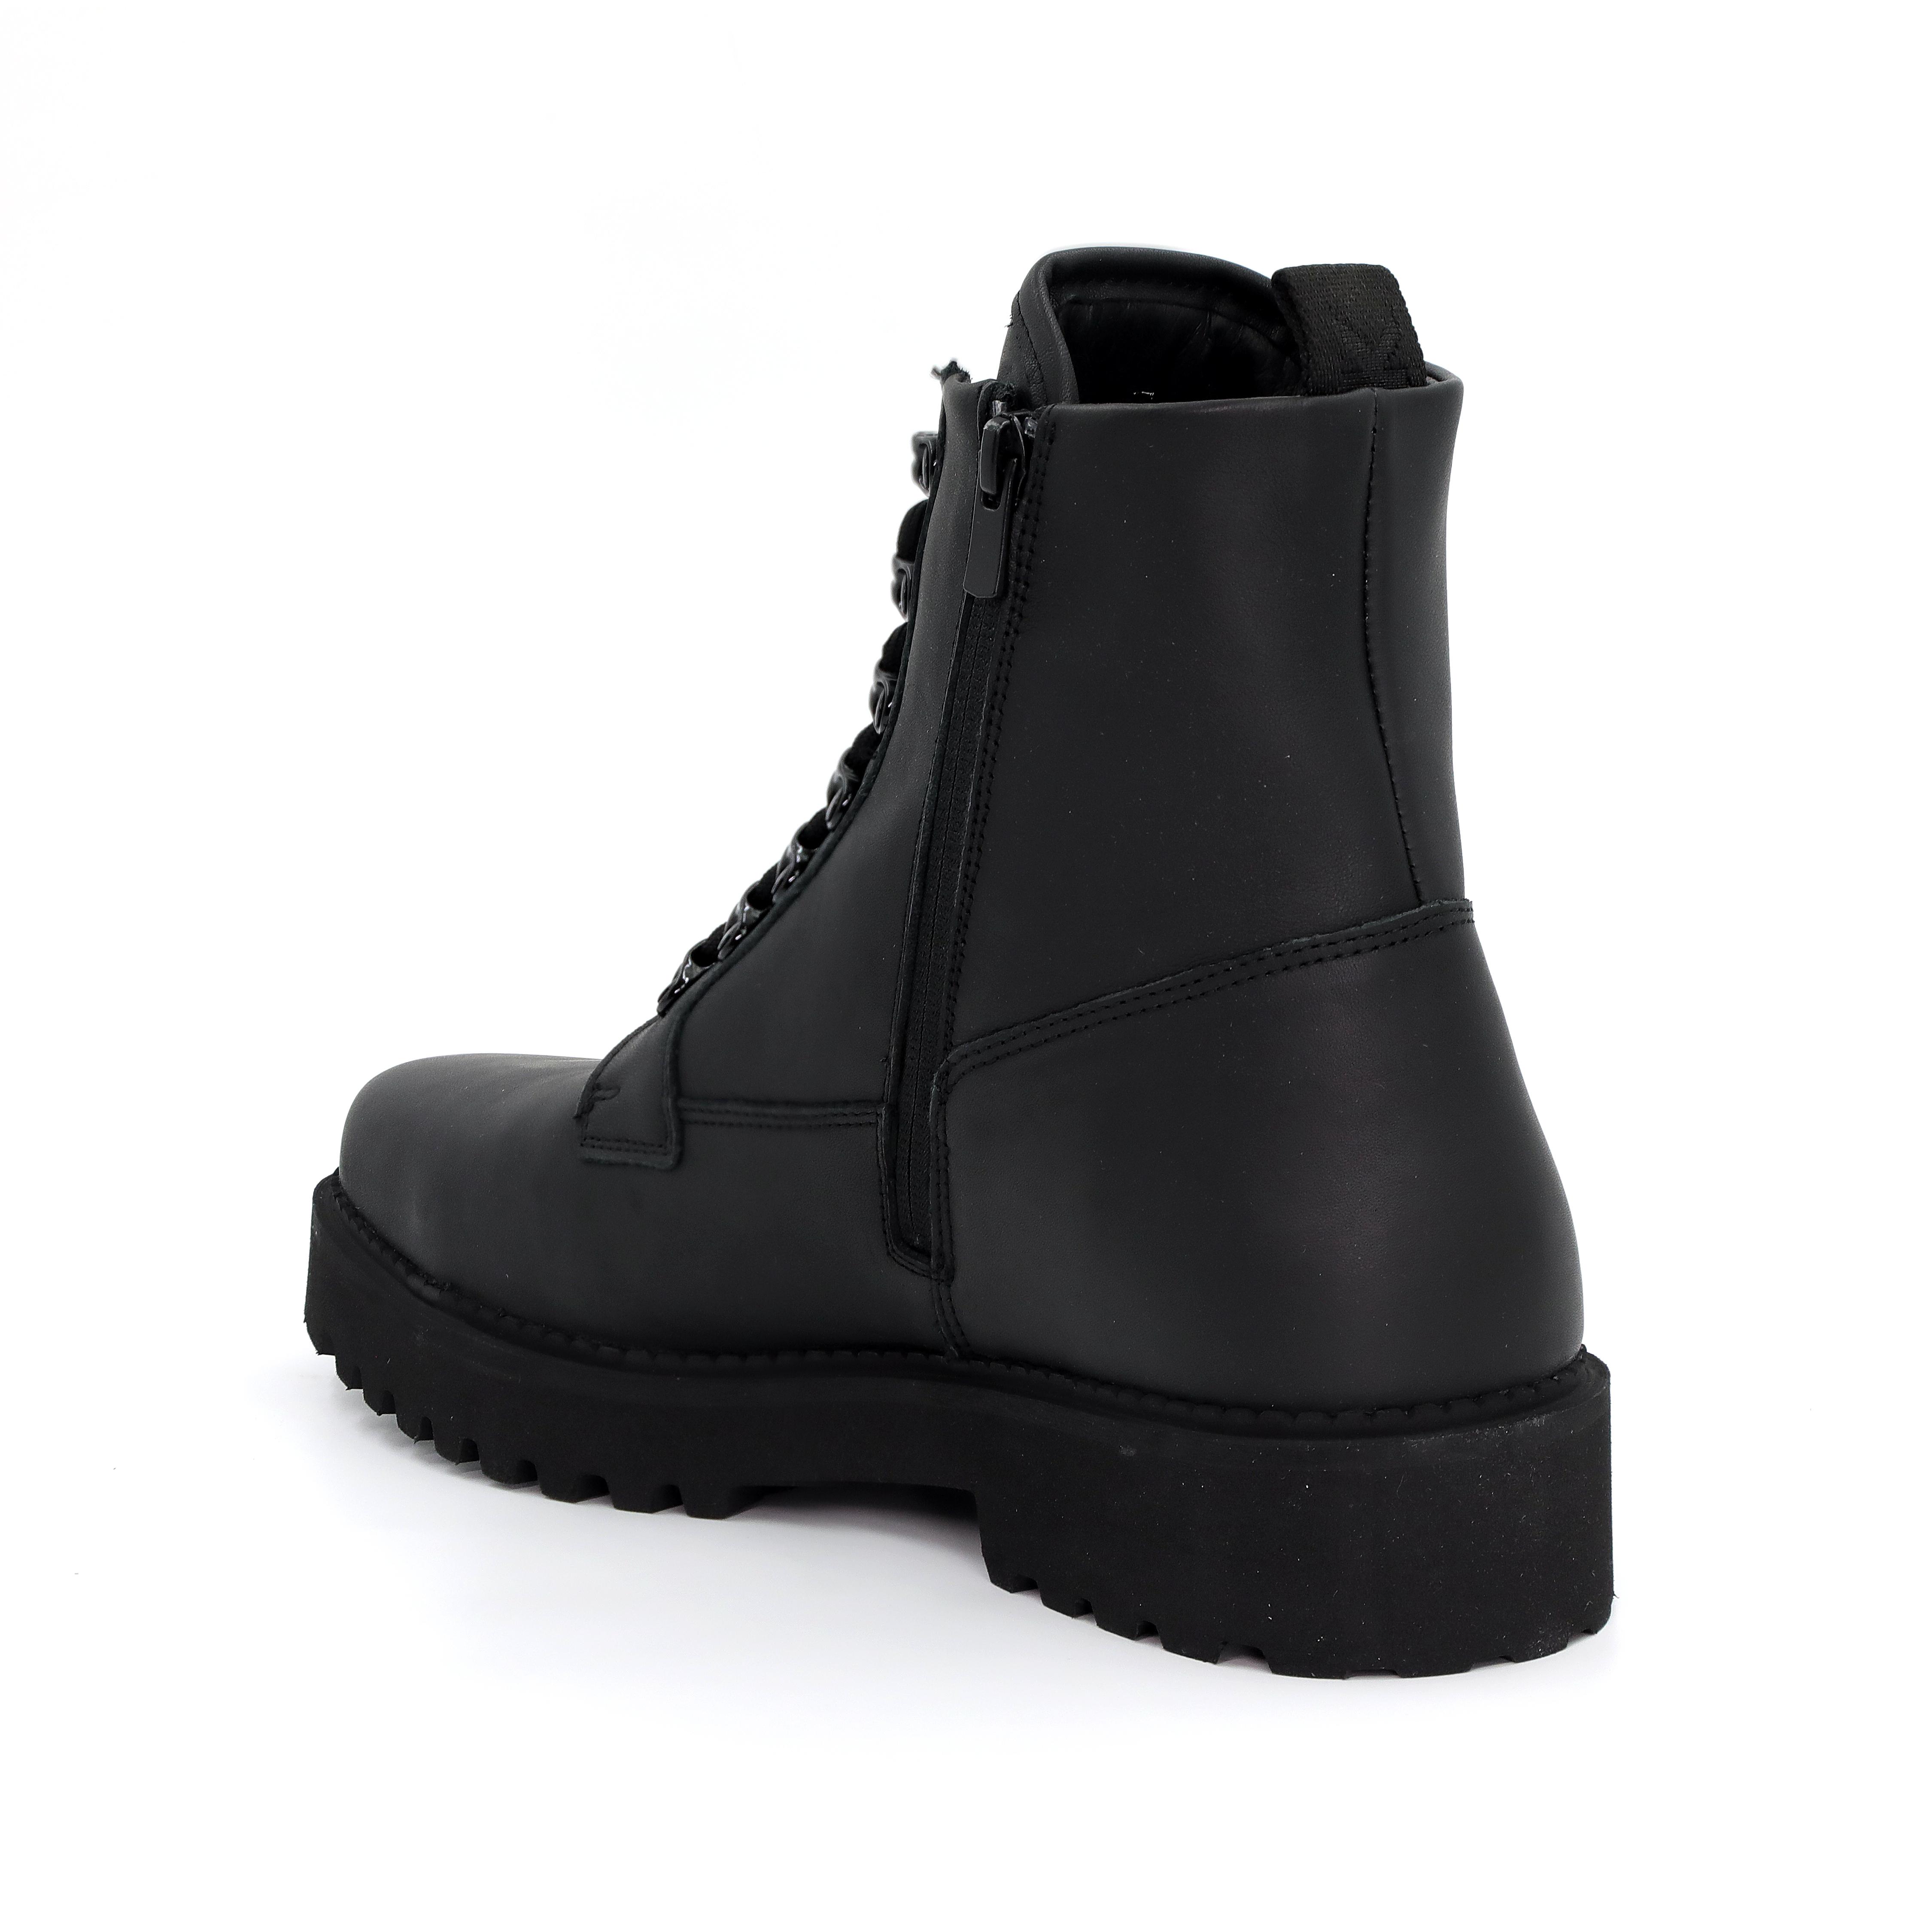 Мужские ботинки Nubikk, черные, цвет черный, размер 43 - фото 3